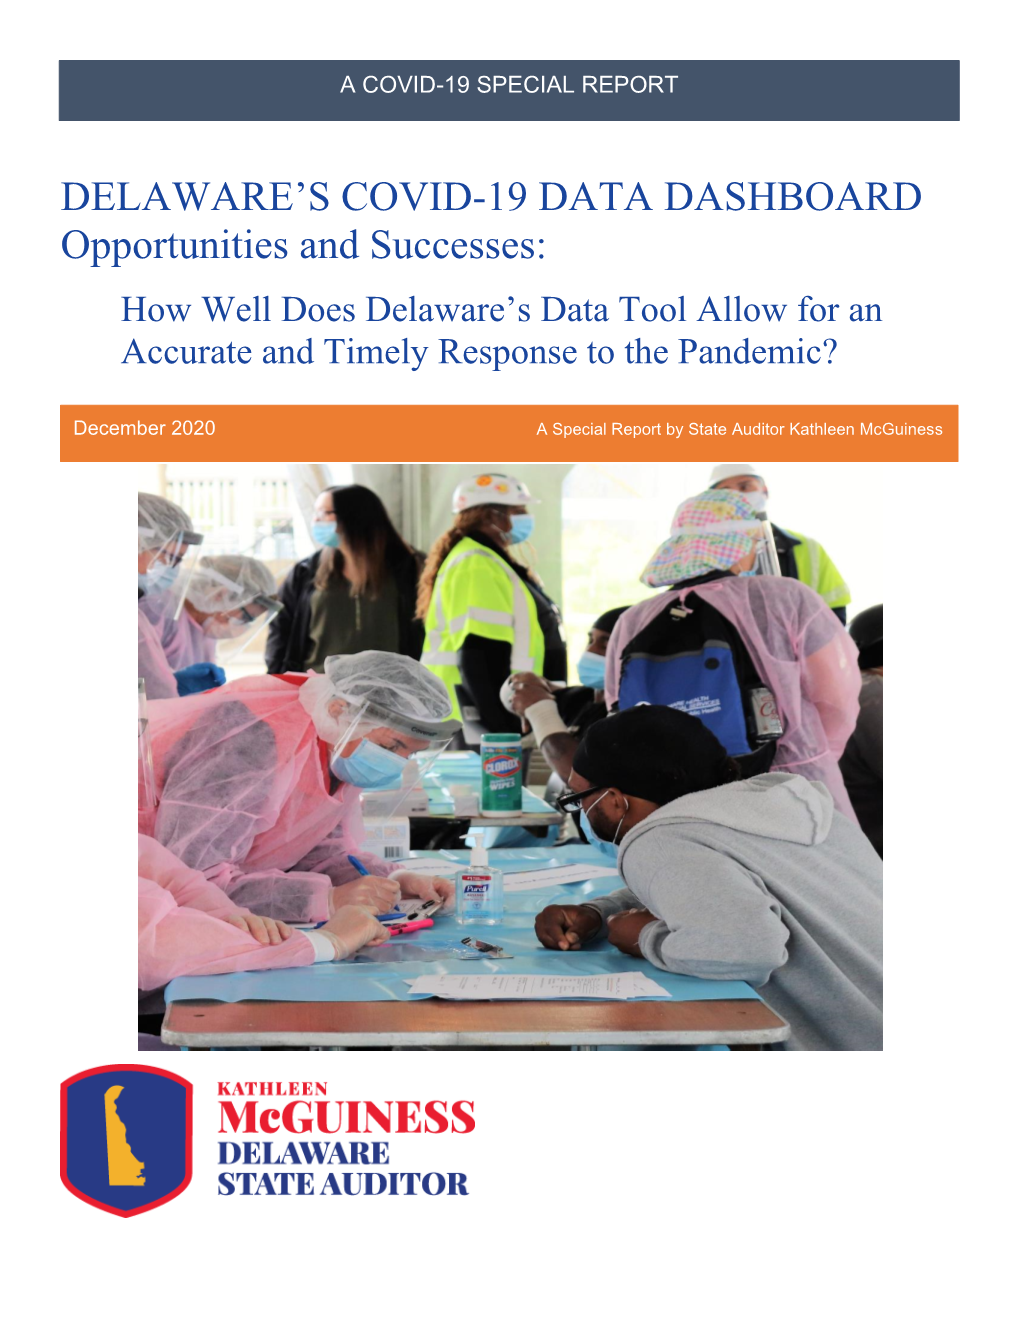 Delaware's COVID-19 Data Dashboard